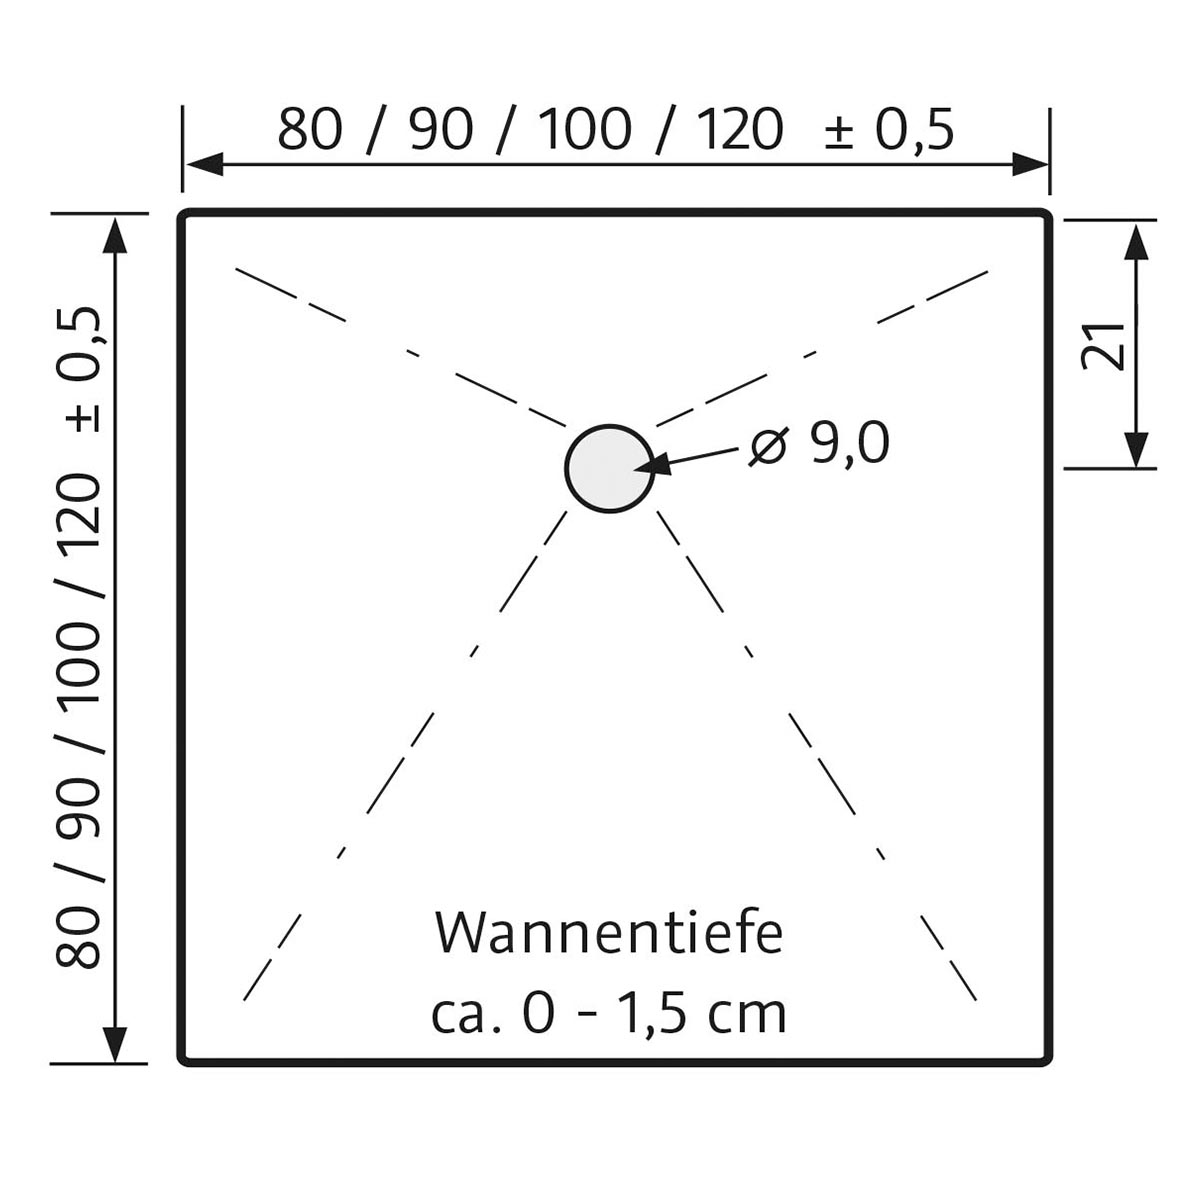 HSK Marmor-Polymer Quadrat Duschwanne plan-Weiß-80 x 80 cm-ohne AntiSlip-Beschichtung-mit Aquaproof-Dichtset